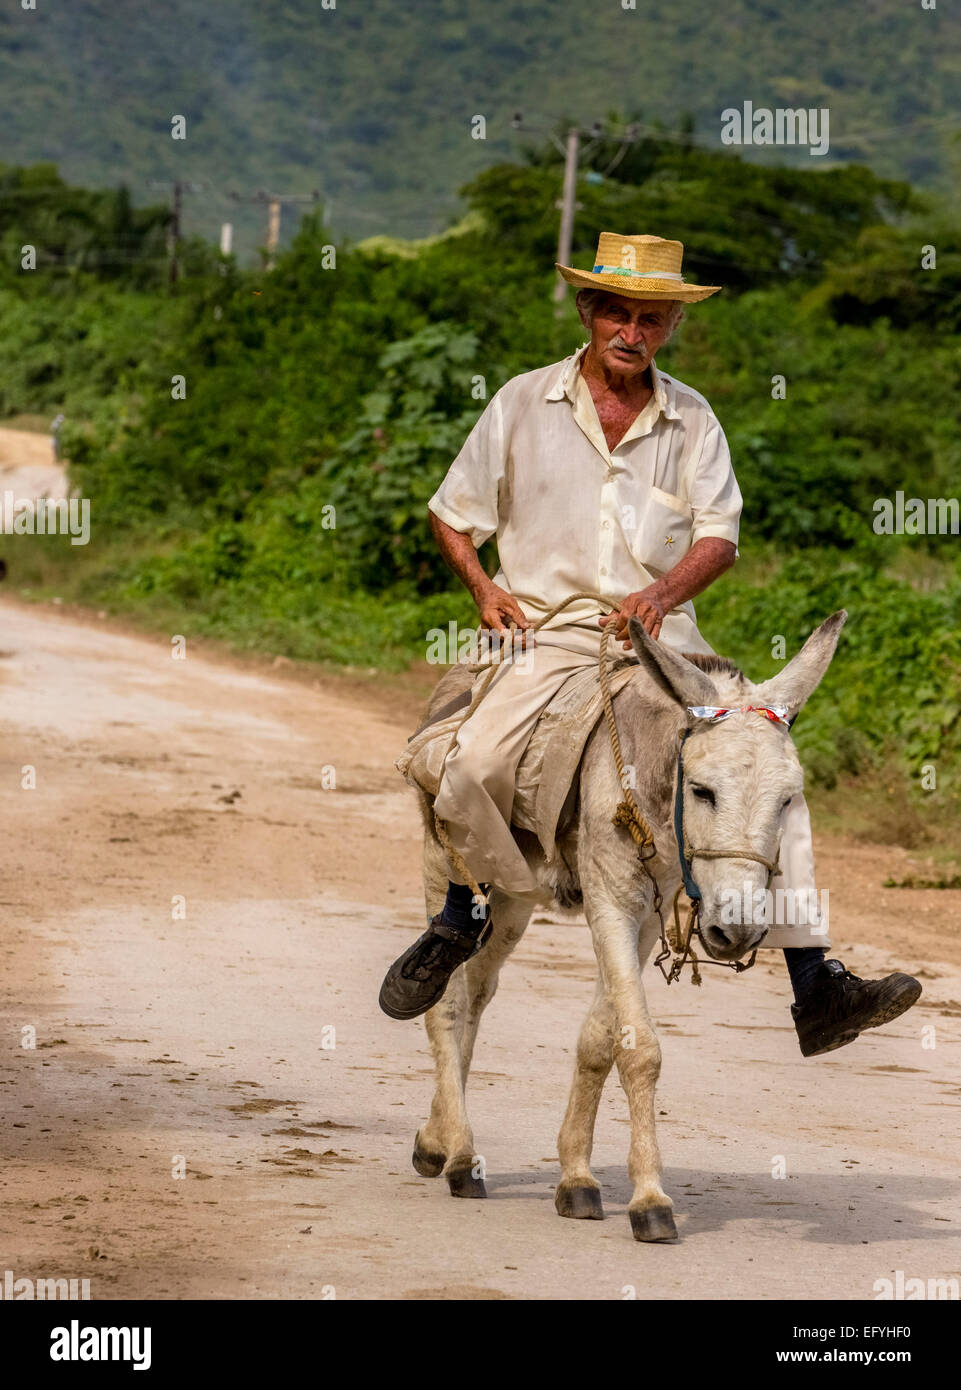 Personnes âgées agriculteur cubain sur muleback, Valle de los Ingenios, Trinidad, la province de Sancti Spiritus, Cuba Banque D'Images